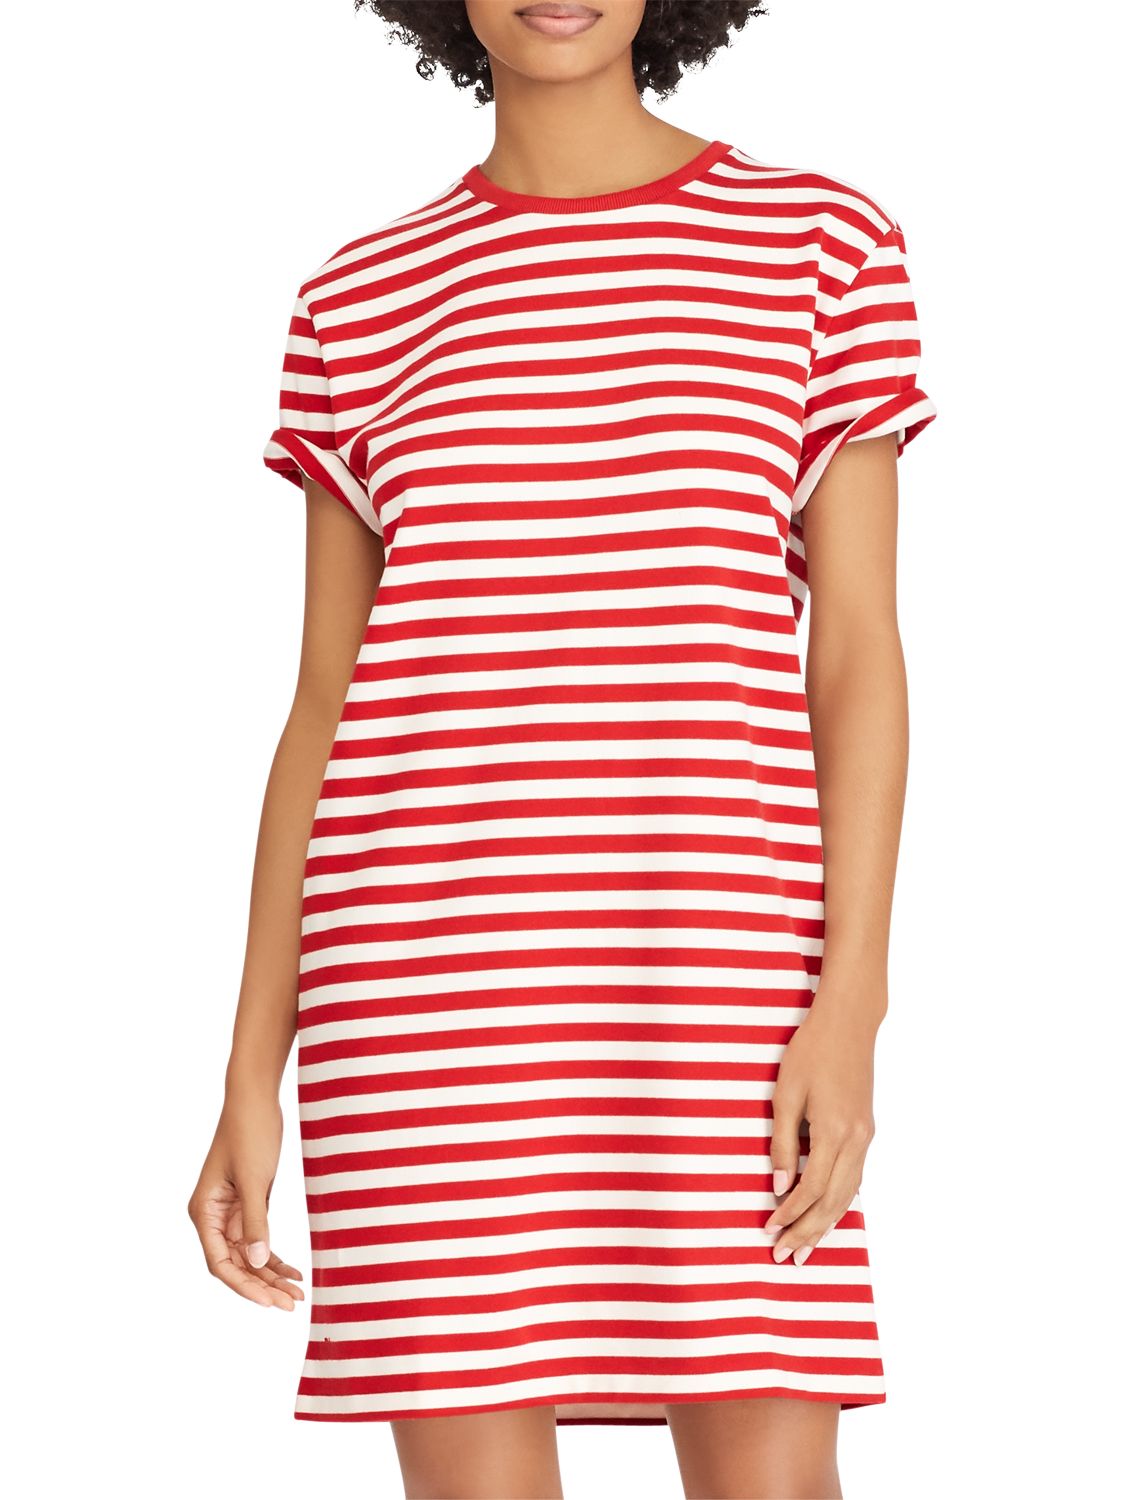 women's striped t shirt dress